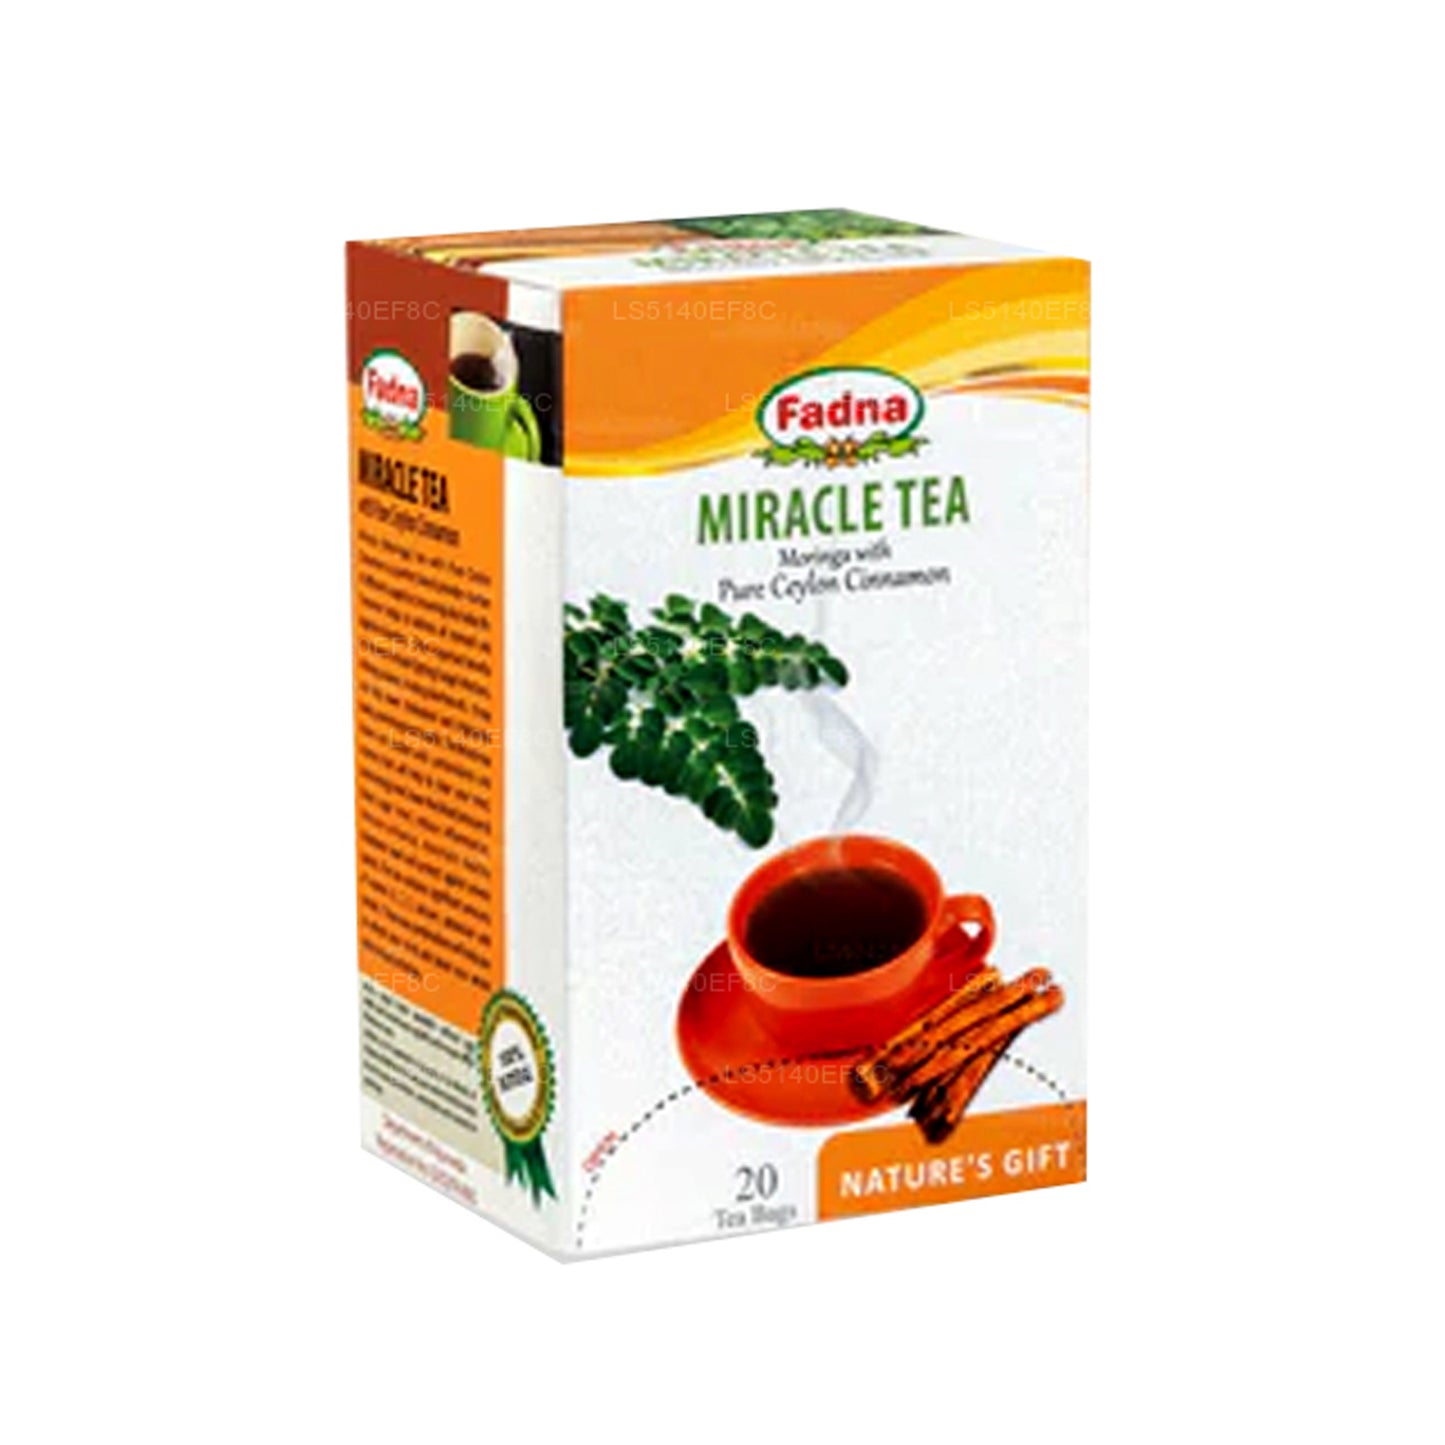 Fadna Moringa à la cannelle (40g) 20 sachets de thé